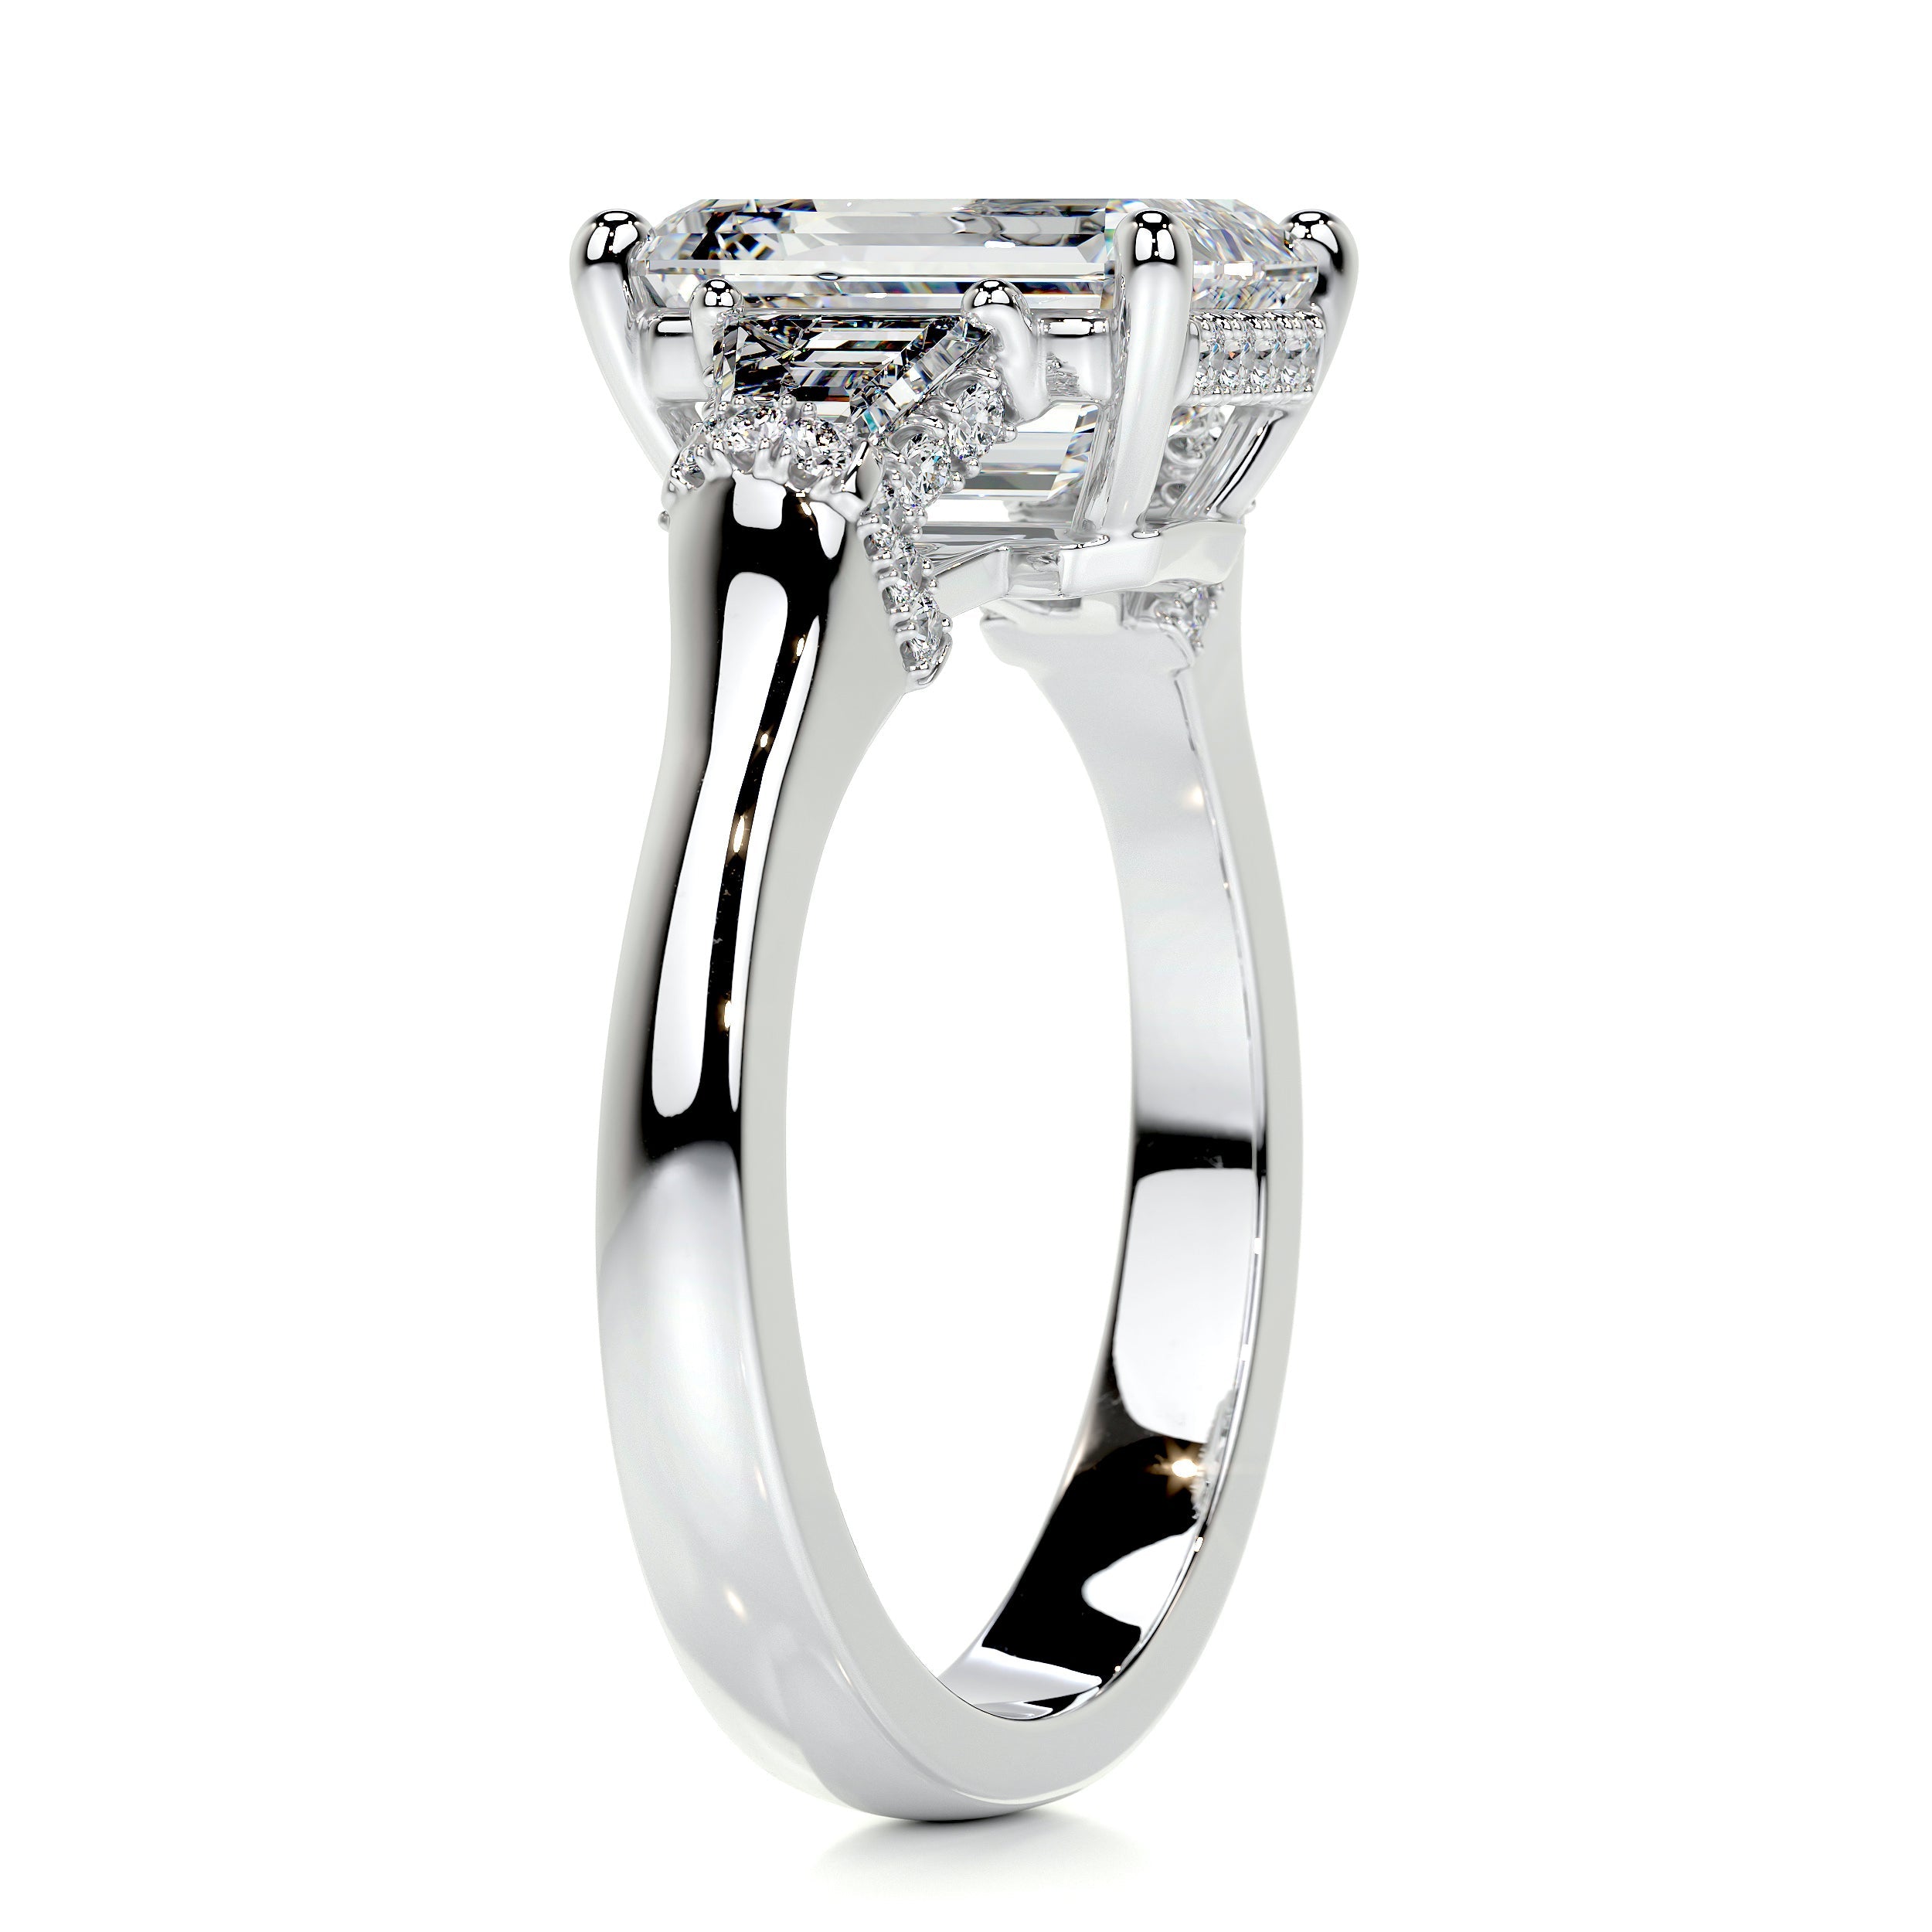 Viola Diamond Engagement Ring   (3.6 Carat) -14K White Gold